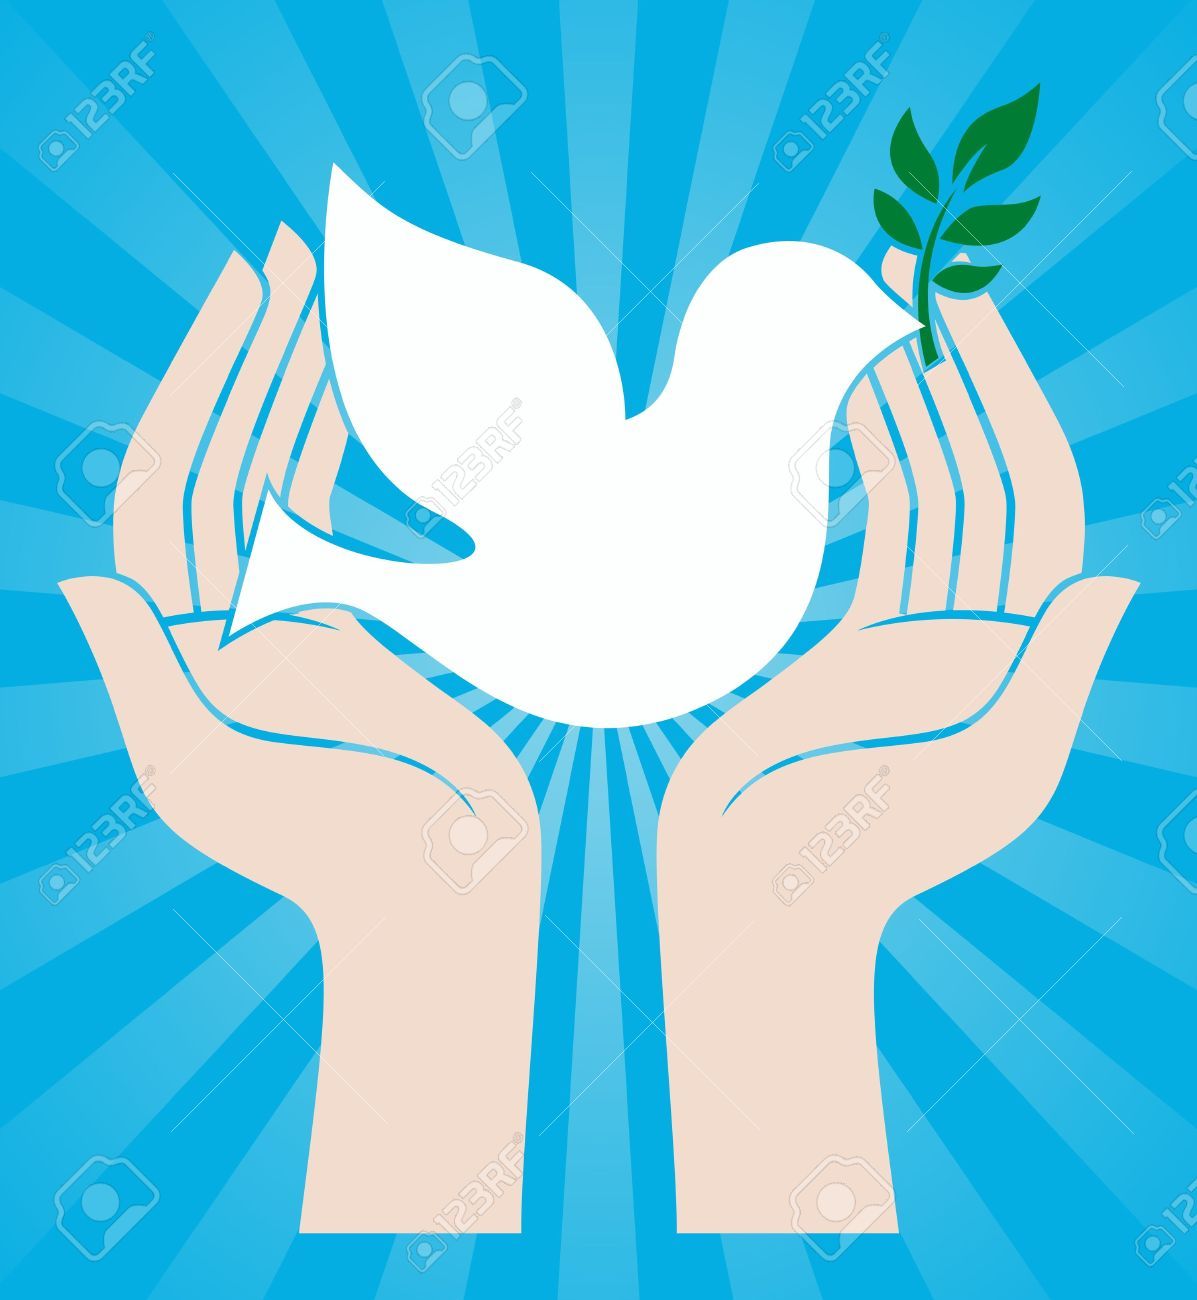 clipart dove peace symbol